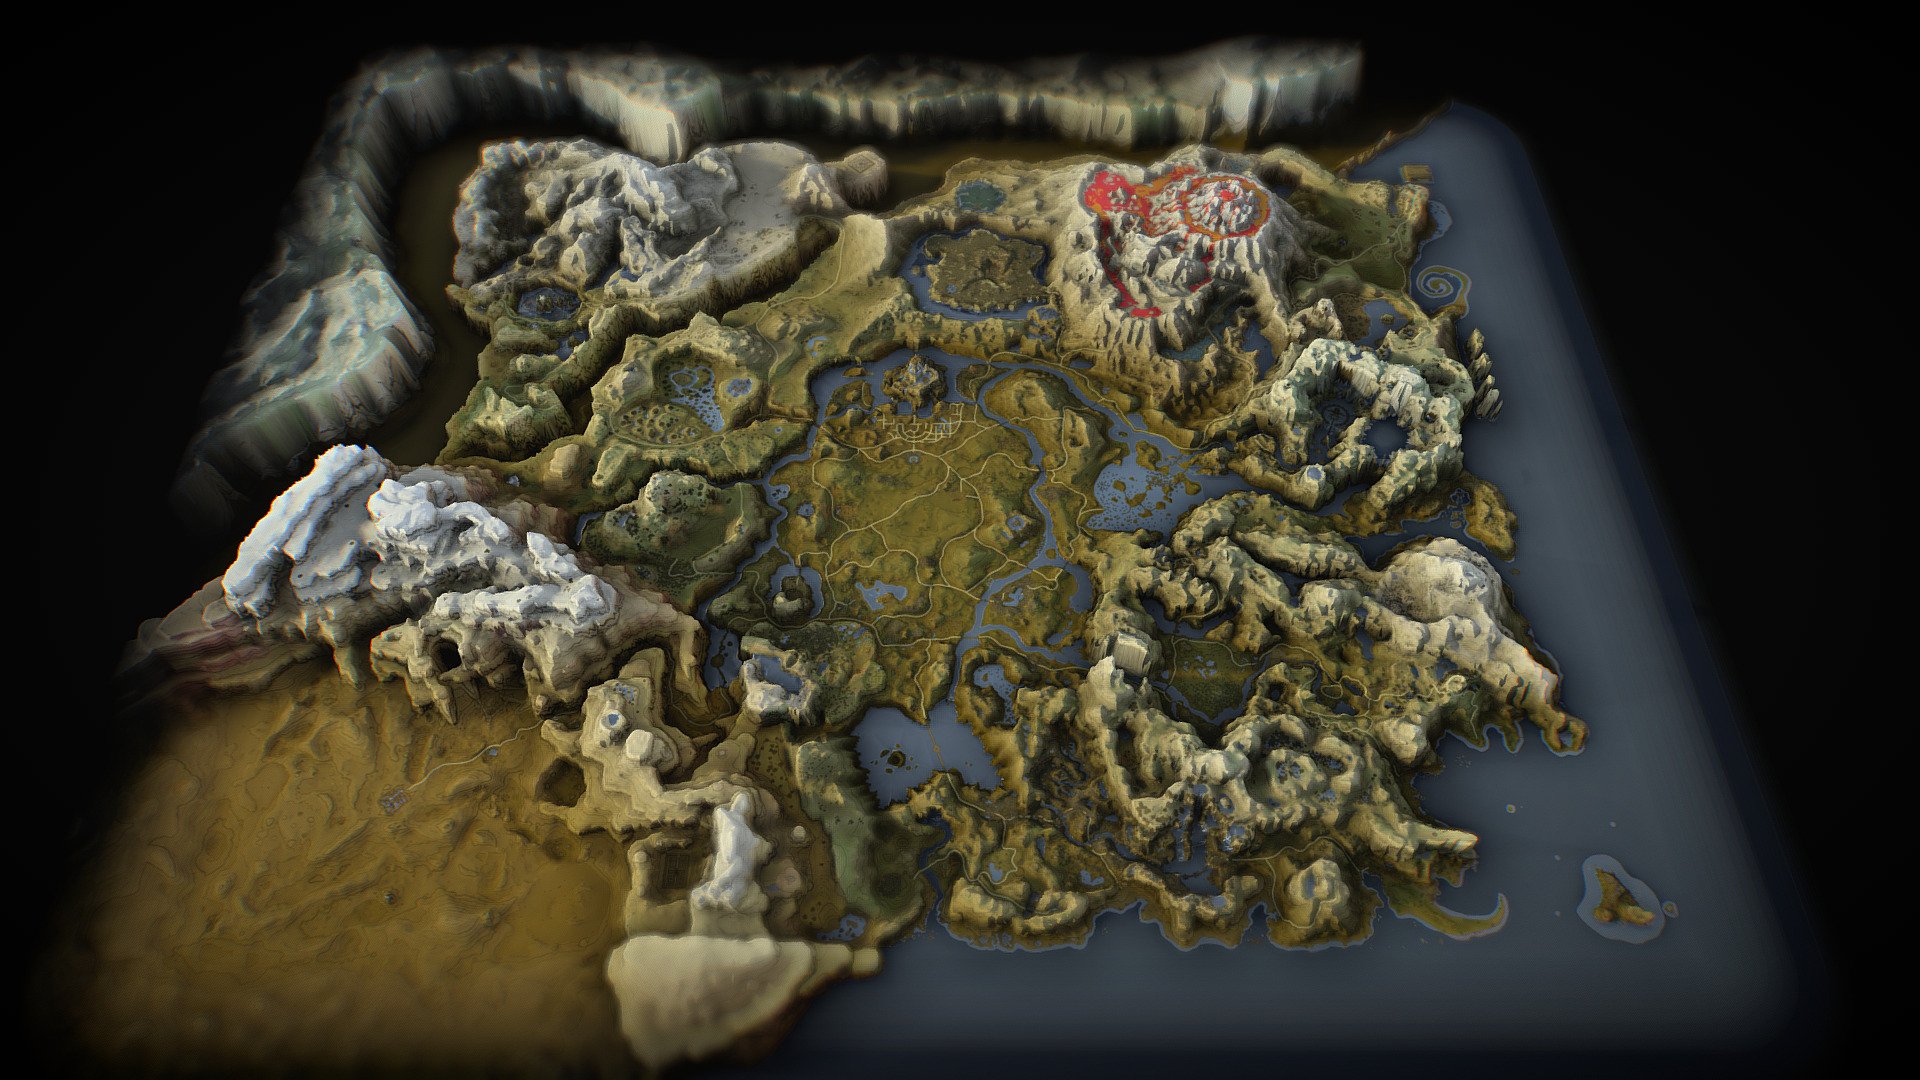 smash bros ultimate world of darkness legend of zelda map